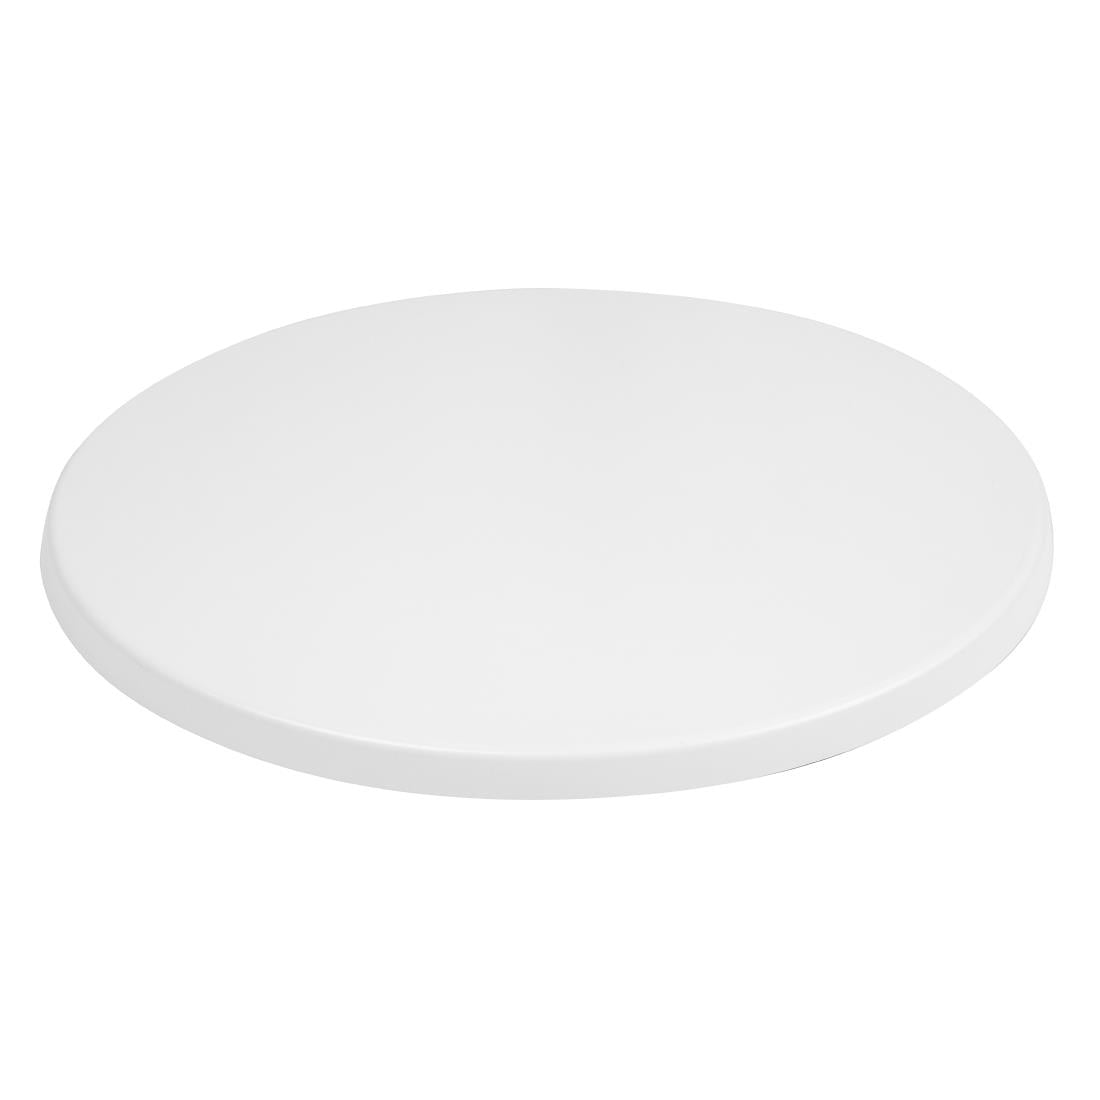 Bolero Pre-drilled Round Tabletop White 600mm